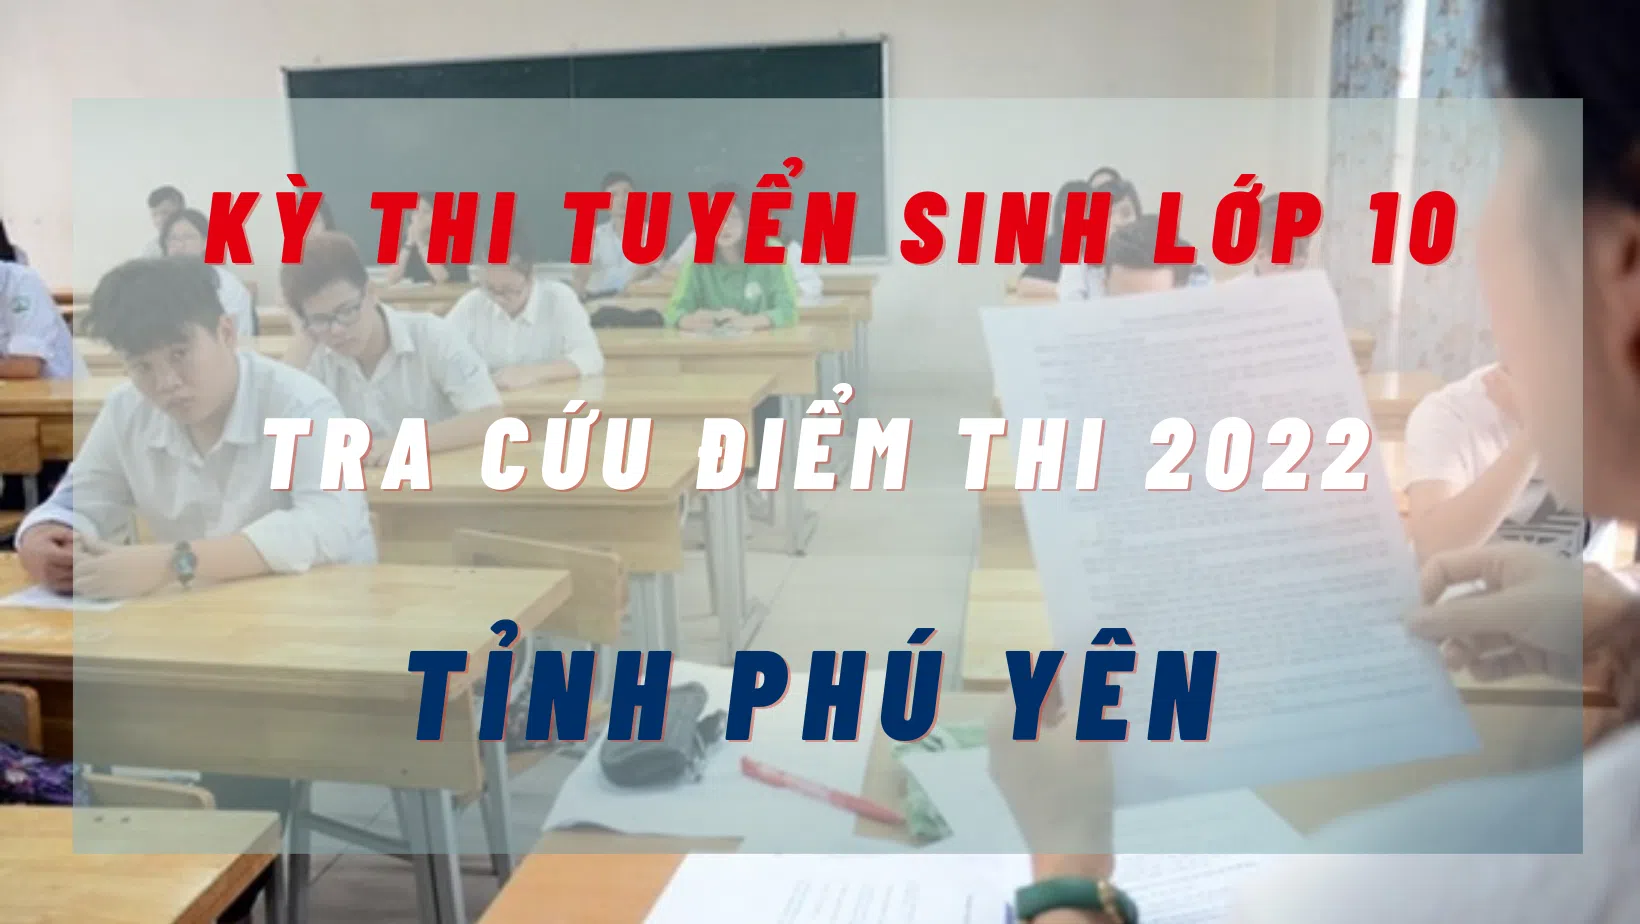 Tra cứu điểm thi tuyển sinh lớp 10 tỉnh Phú Yên năm 2022